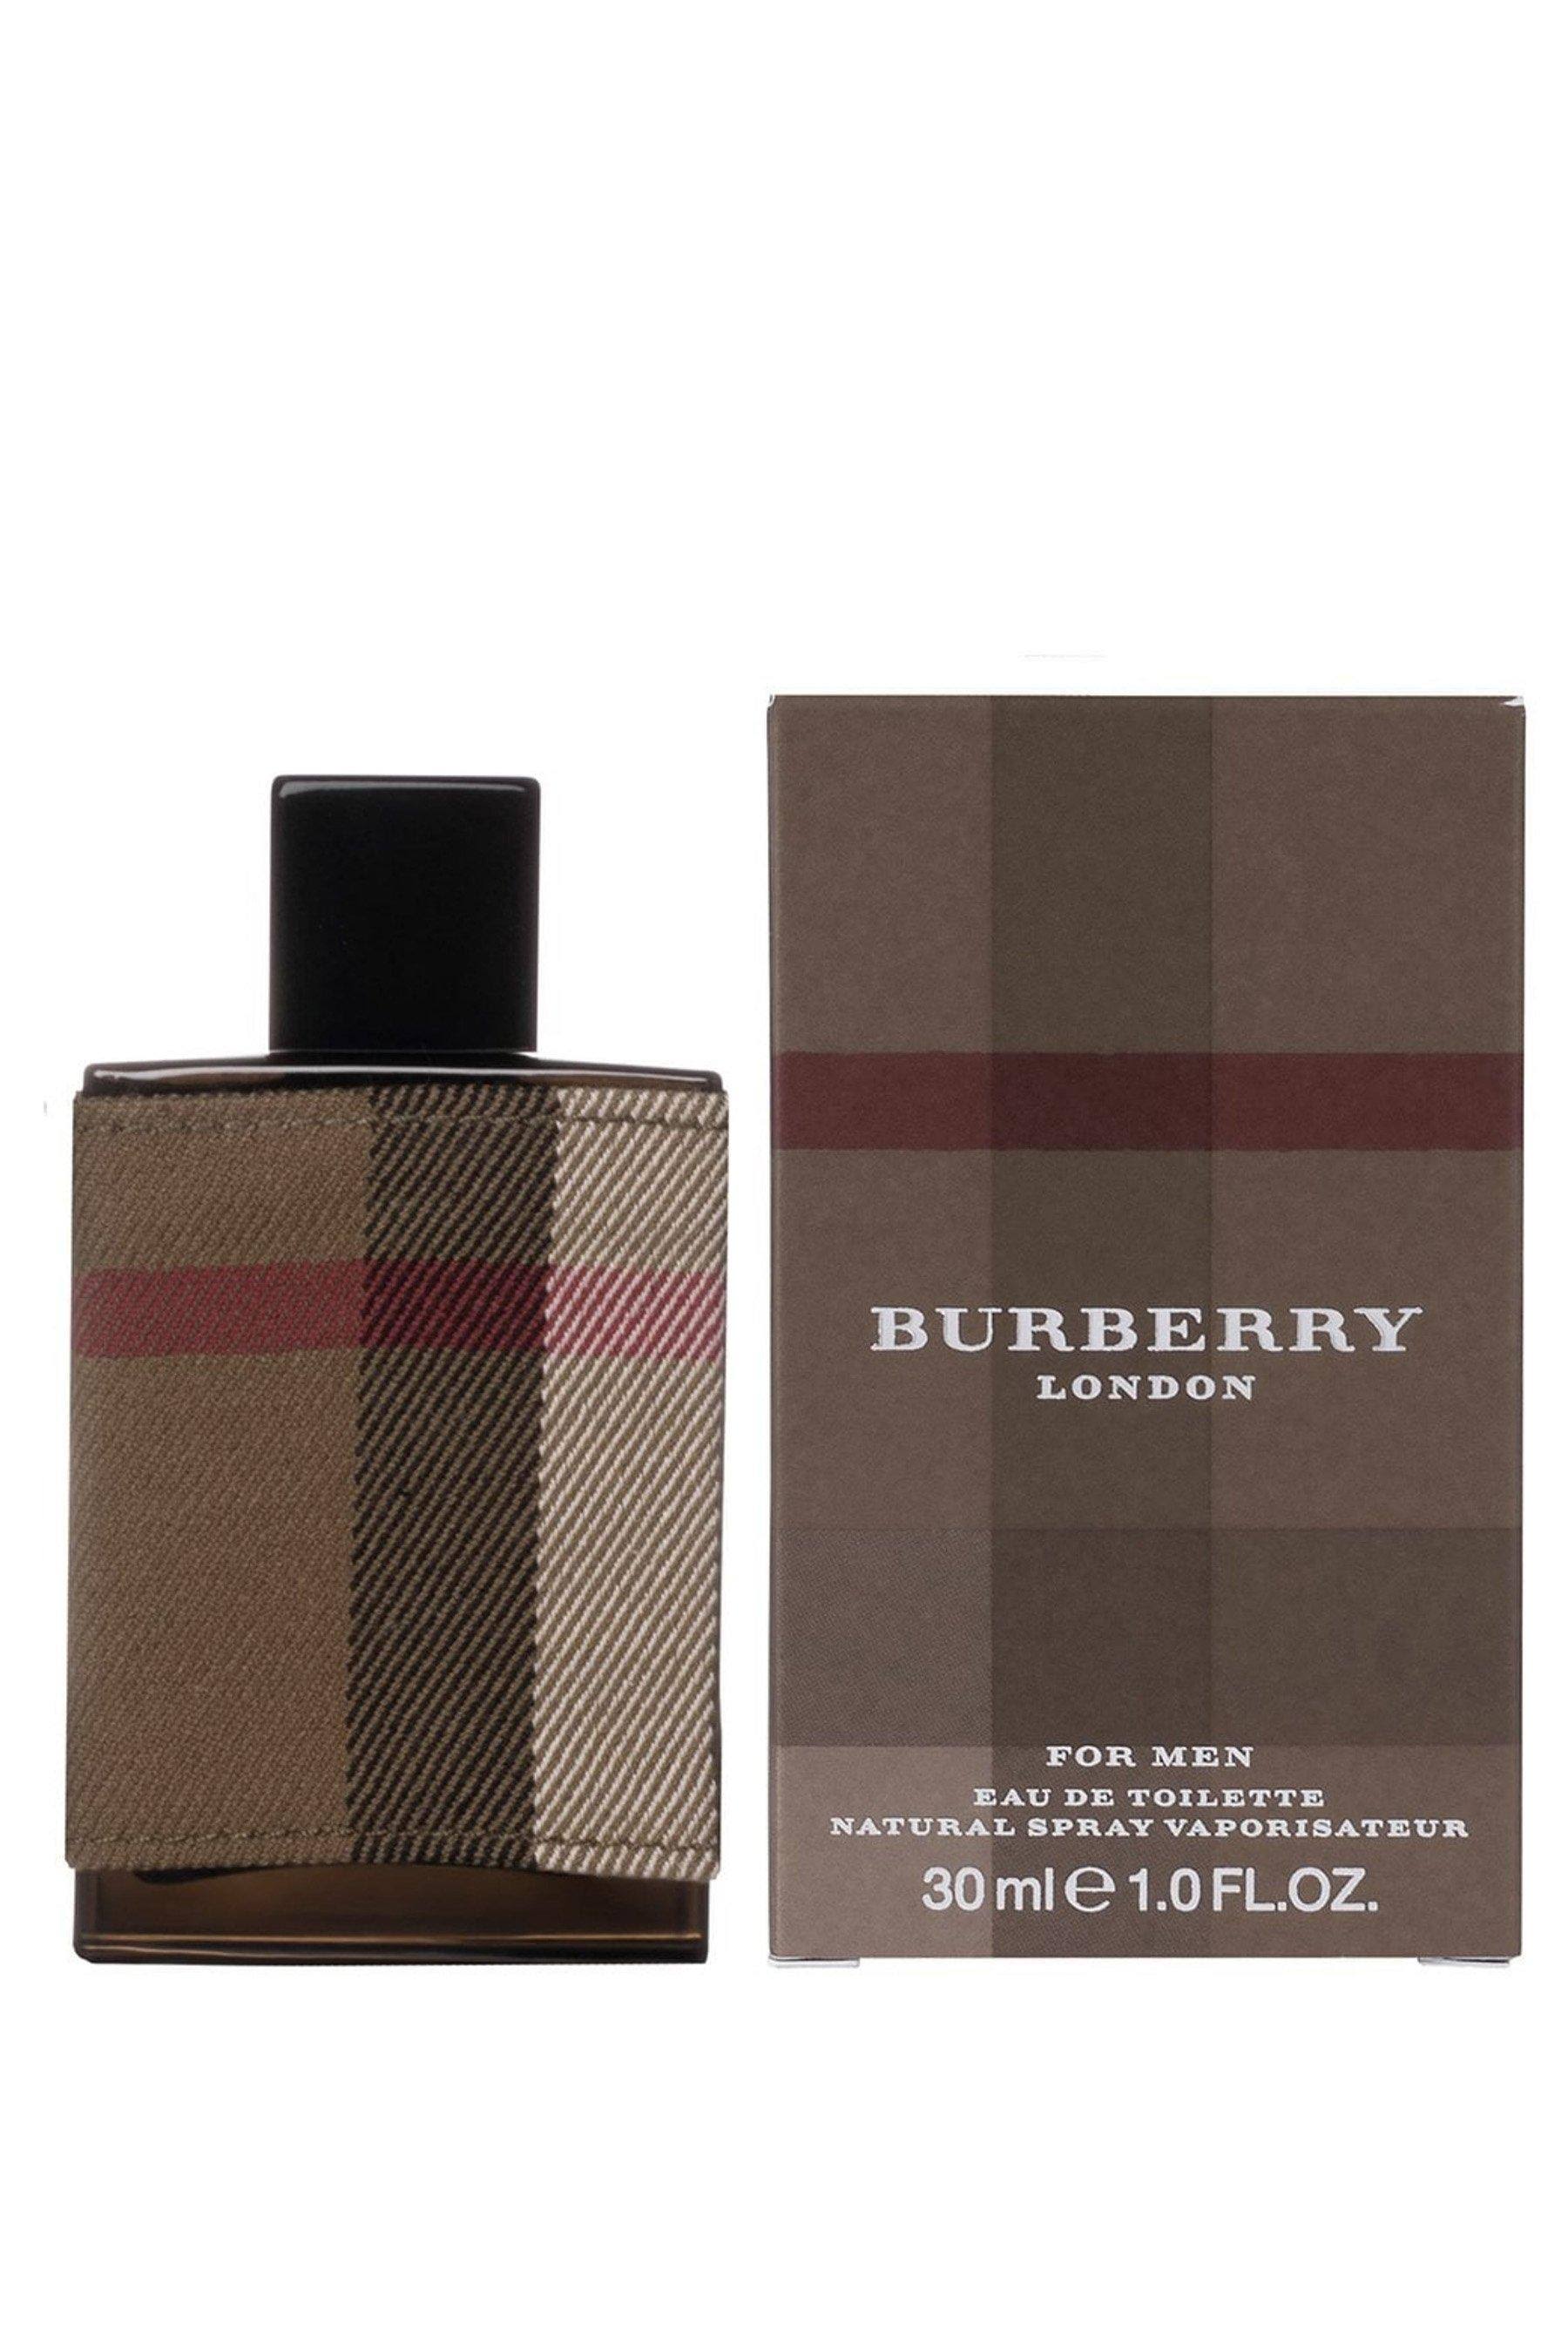 Burberry London (New) by Burberry 1 oz Eau de Toilette Spray / Men